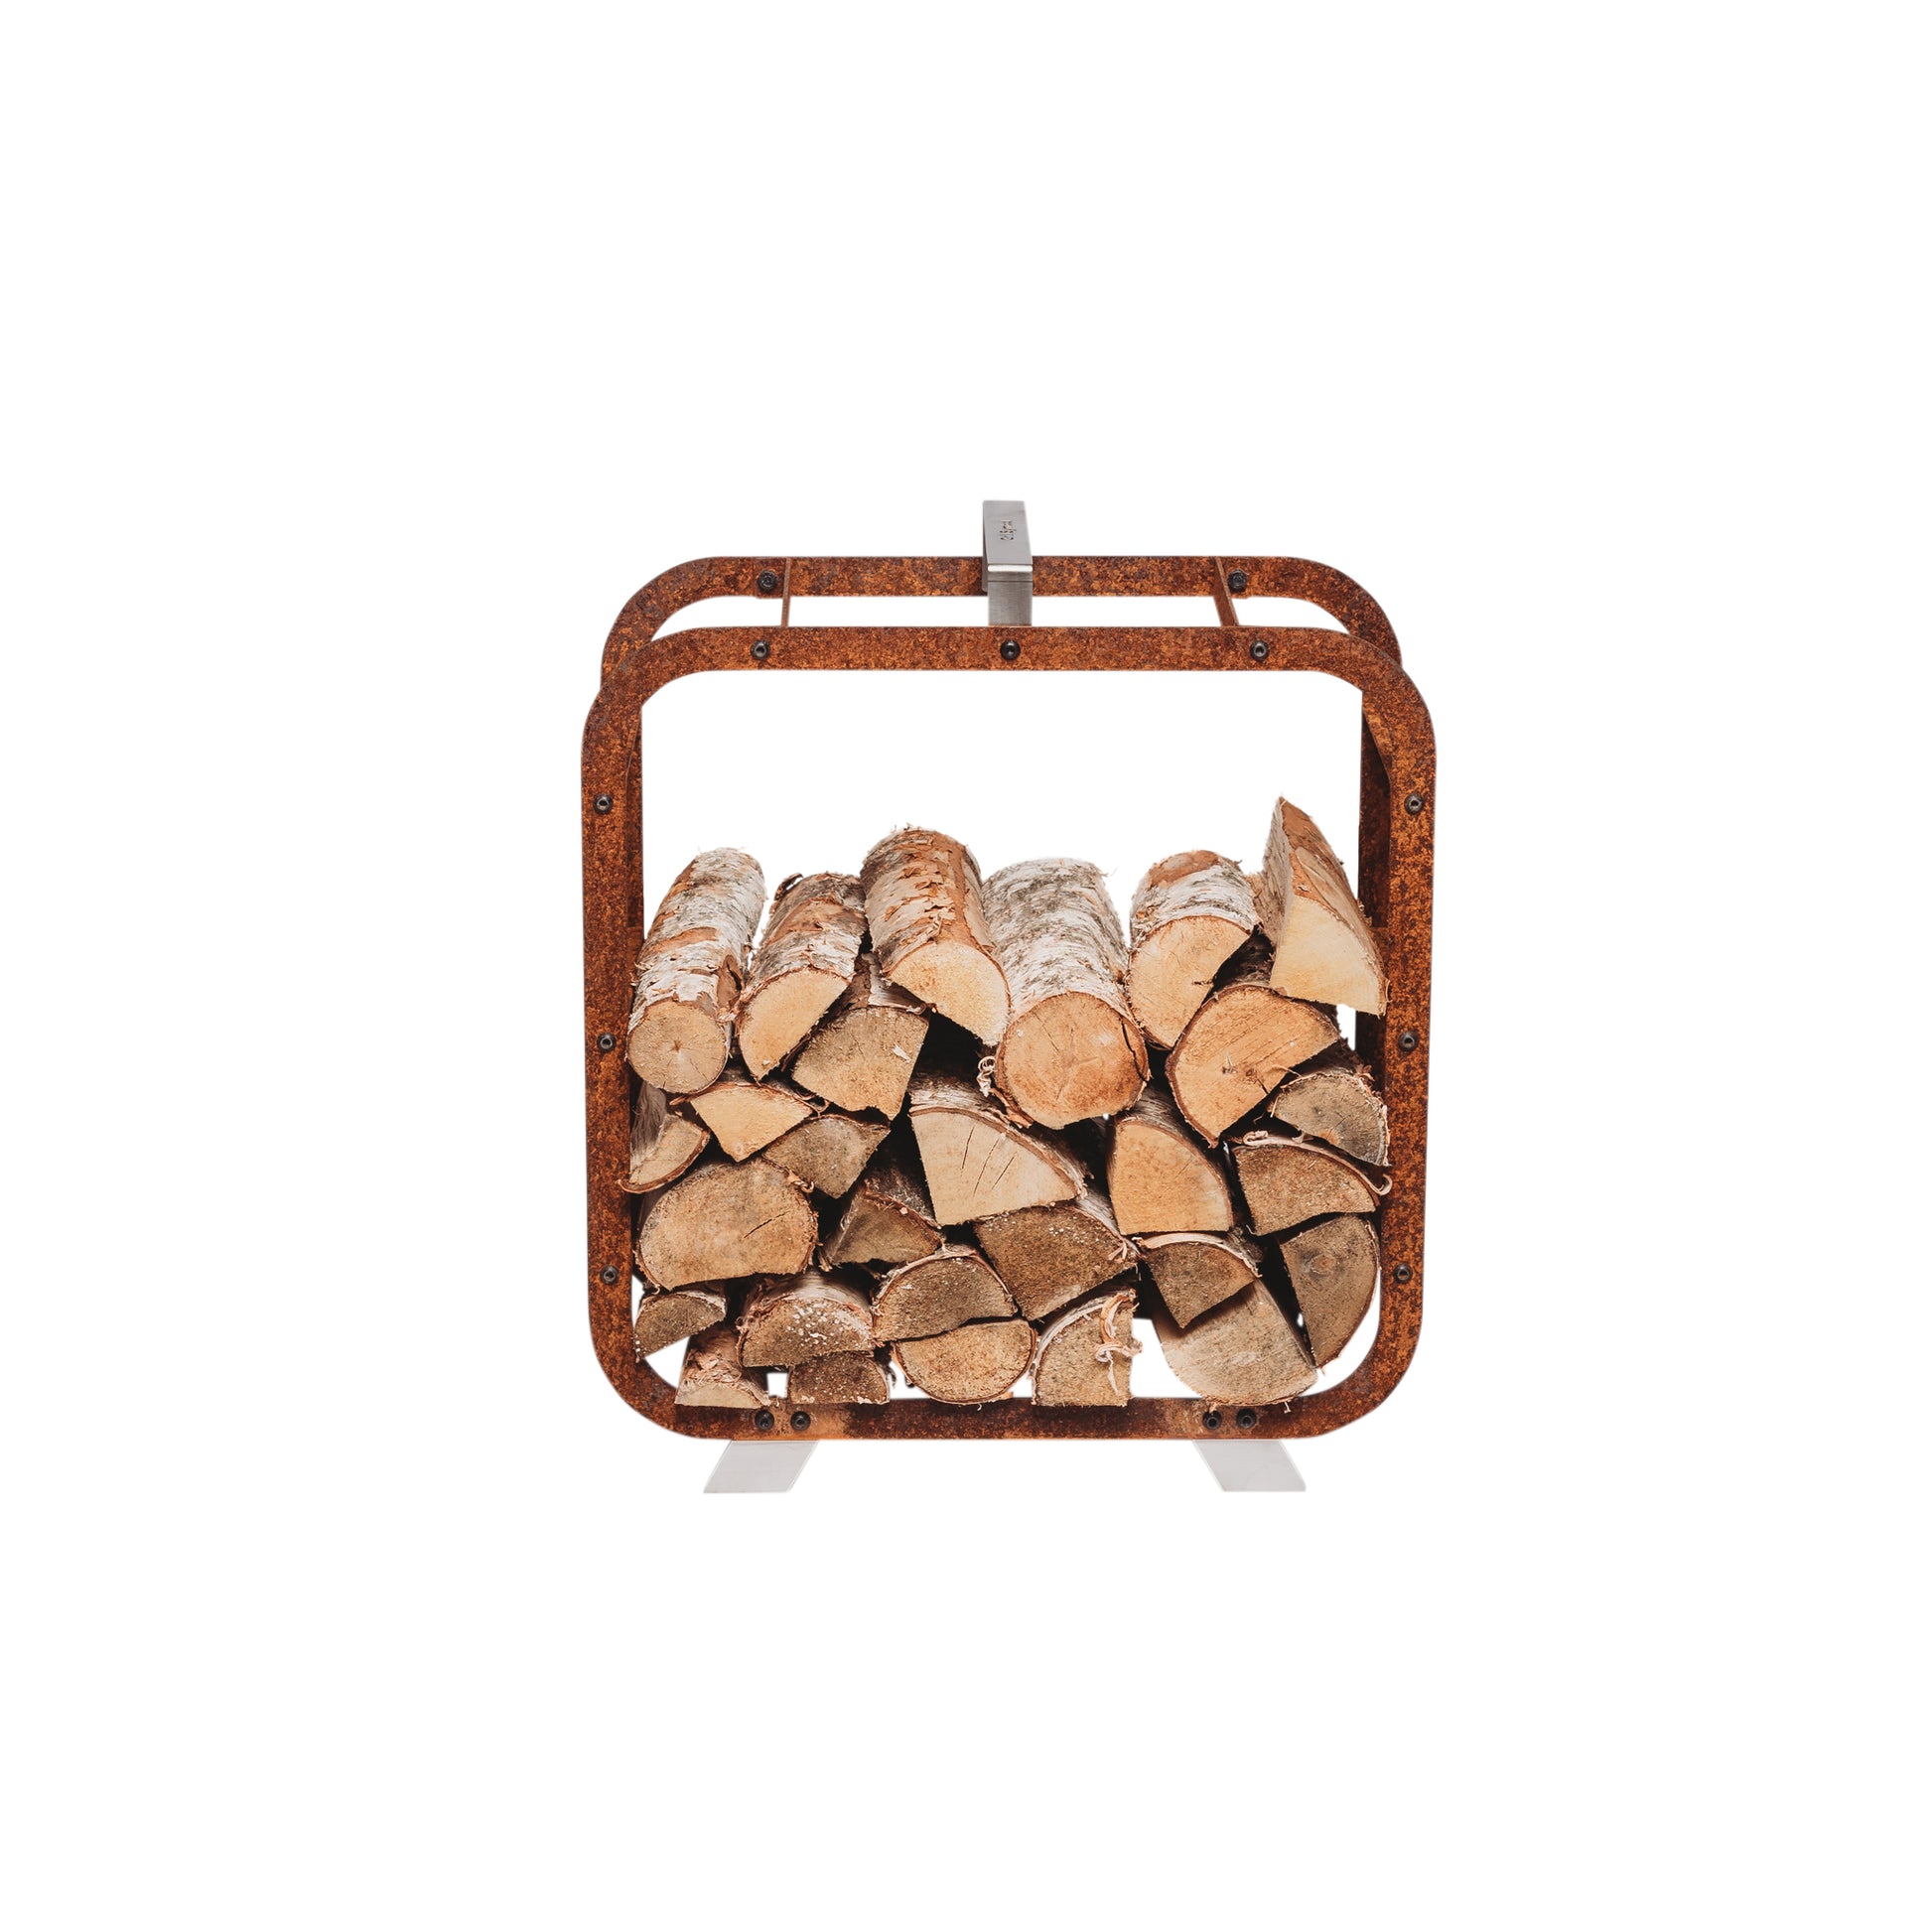 Grill Symbol - Corten Steel Firewood Basket Leo 58*58 cm - Timeout Gardens